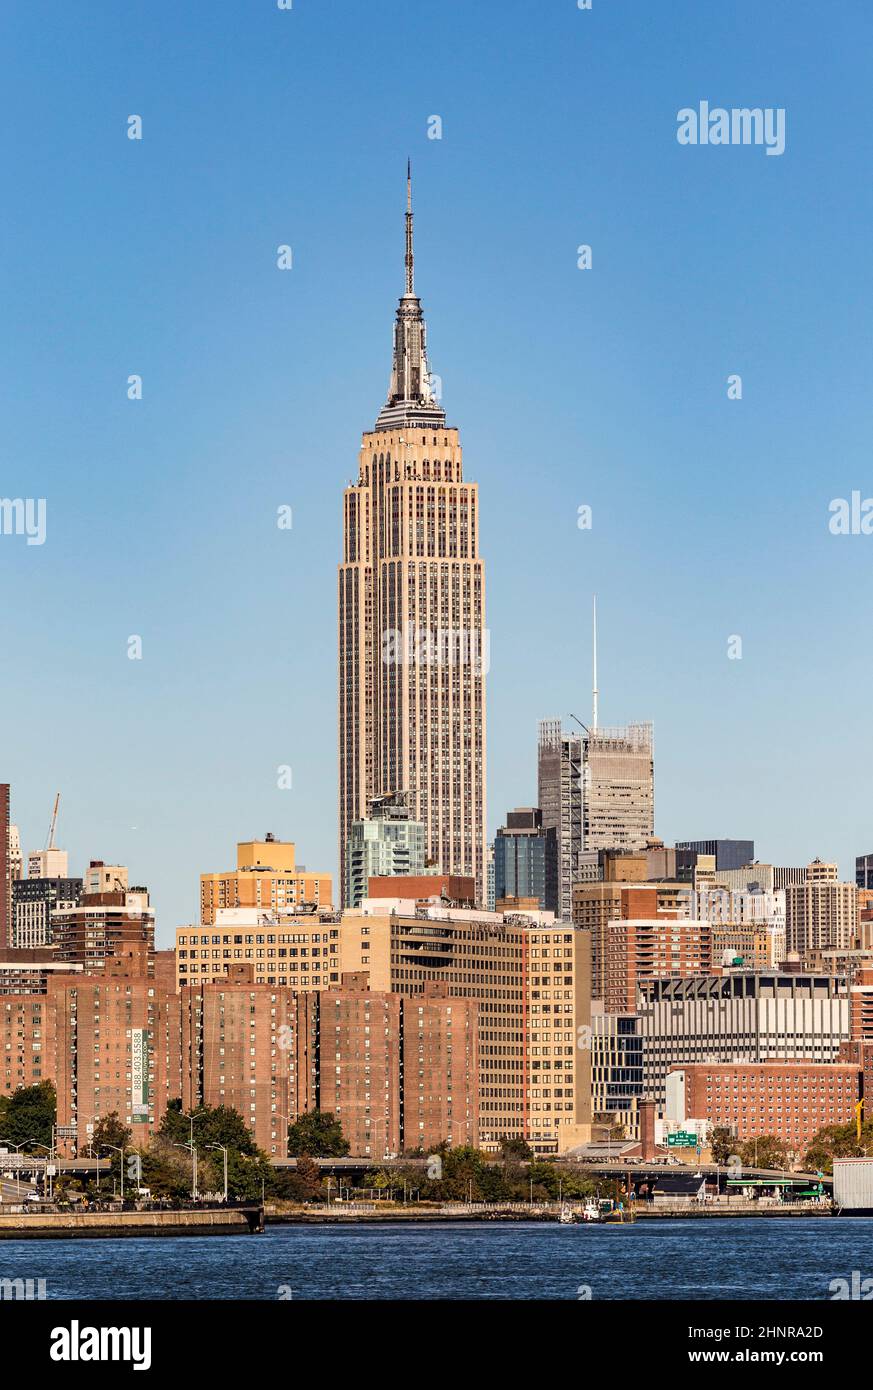 NEW YORK, Etats-Unis - OCT 23, 2015: L'Empire State Building brille dans l'après-midi à New York, Etats-Unis. L'Empire State Building est un monument de 102 étages et une icône culturelle américaine à New York. Banque D'Images